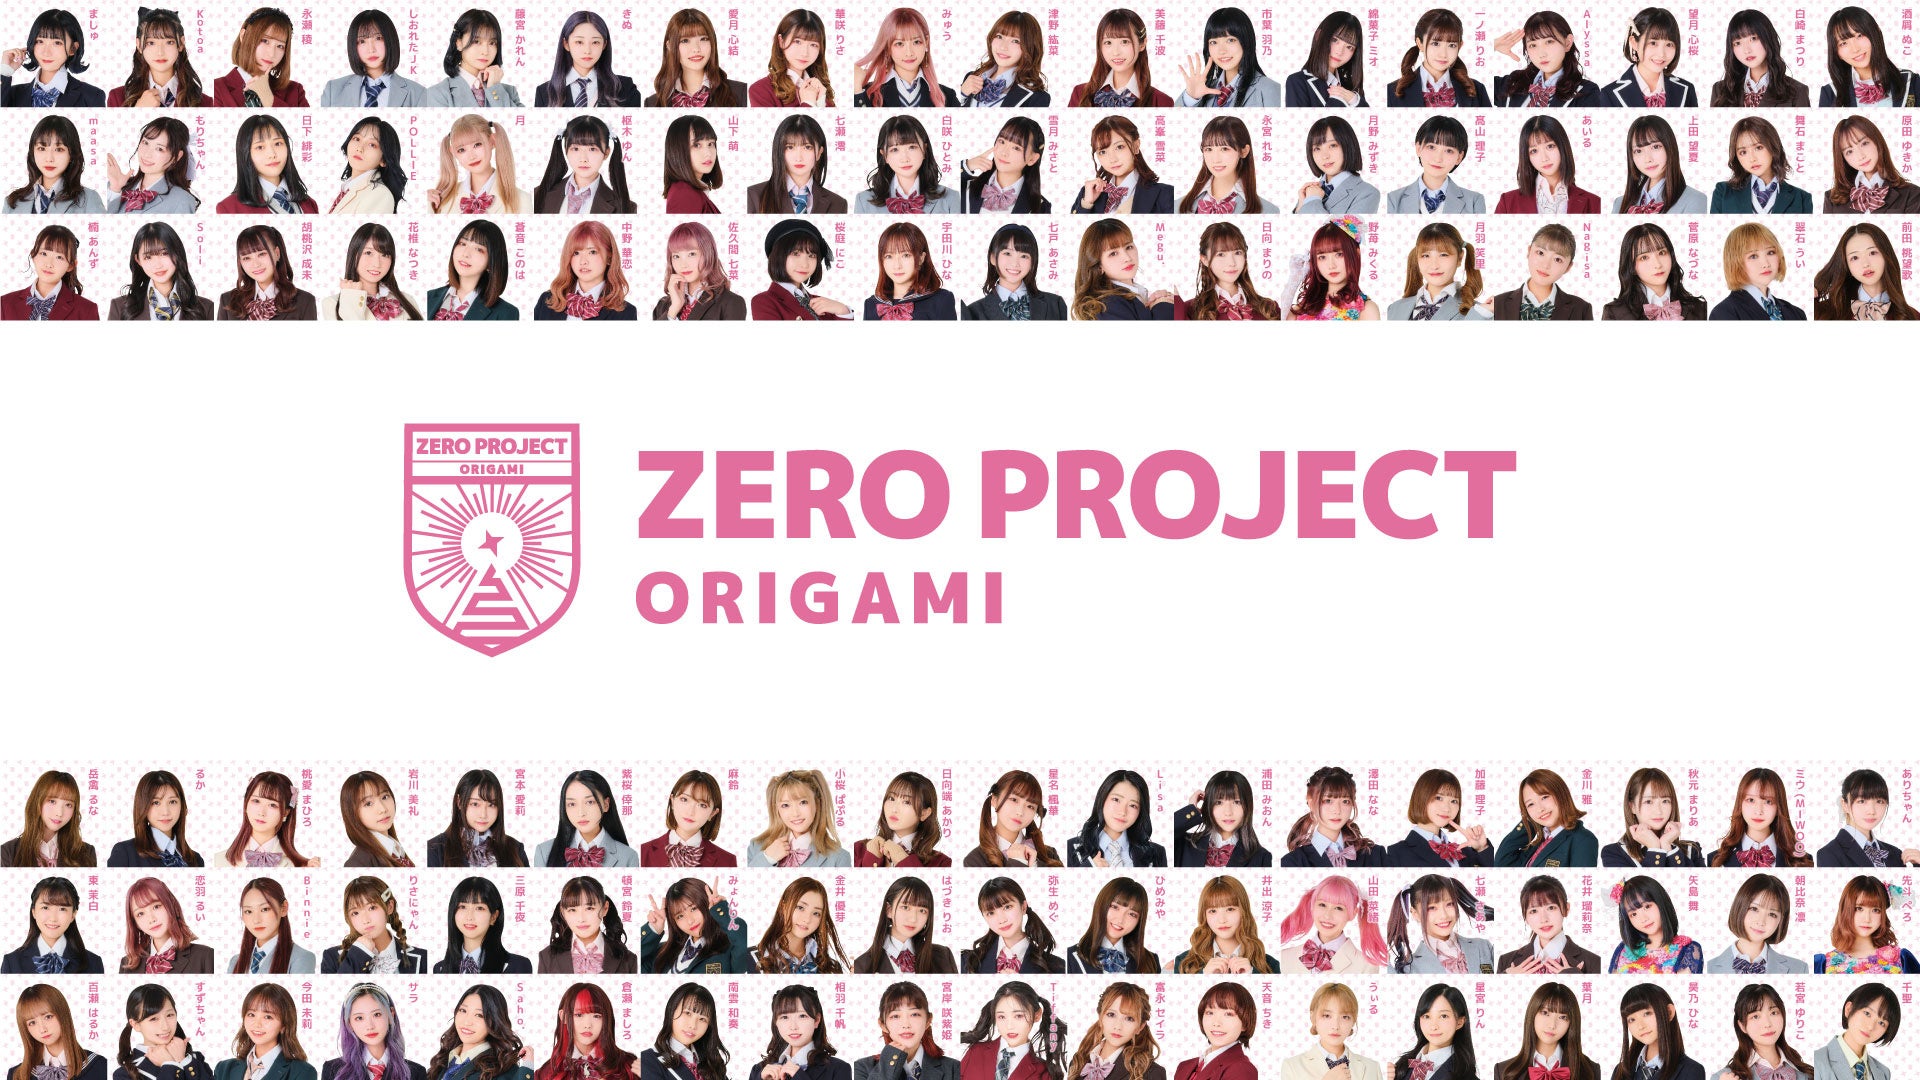 総勢約150名のアイドルの頂点に選ばれた選抜メンバー5名を紹介！「Zero Project」本格始動から2回目のファン投票による結果発表